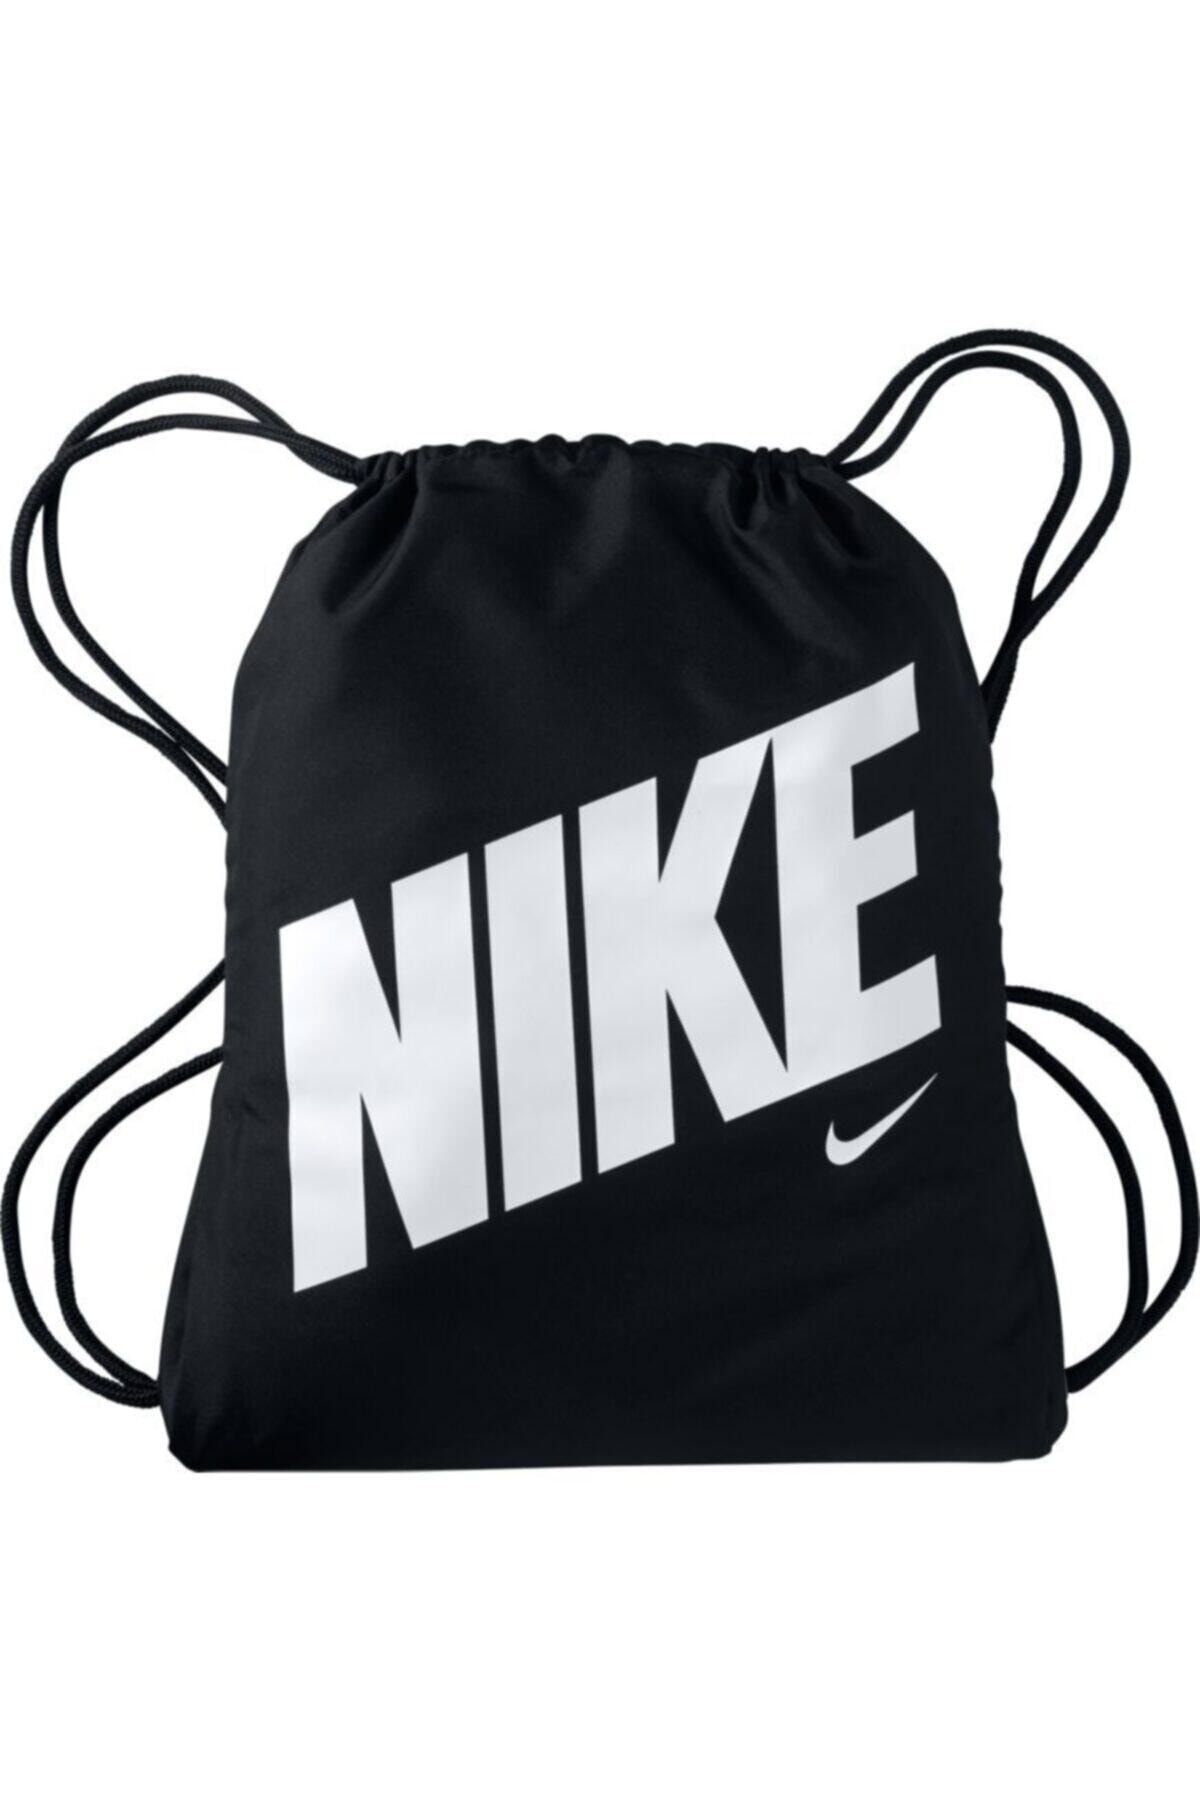 Nike Kadın Siyah Torba Çanta - Y Nk Gmsk Gfx  - BA5262-015